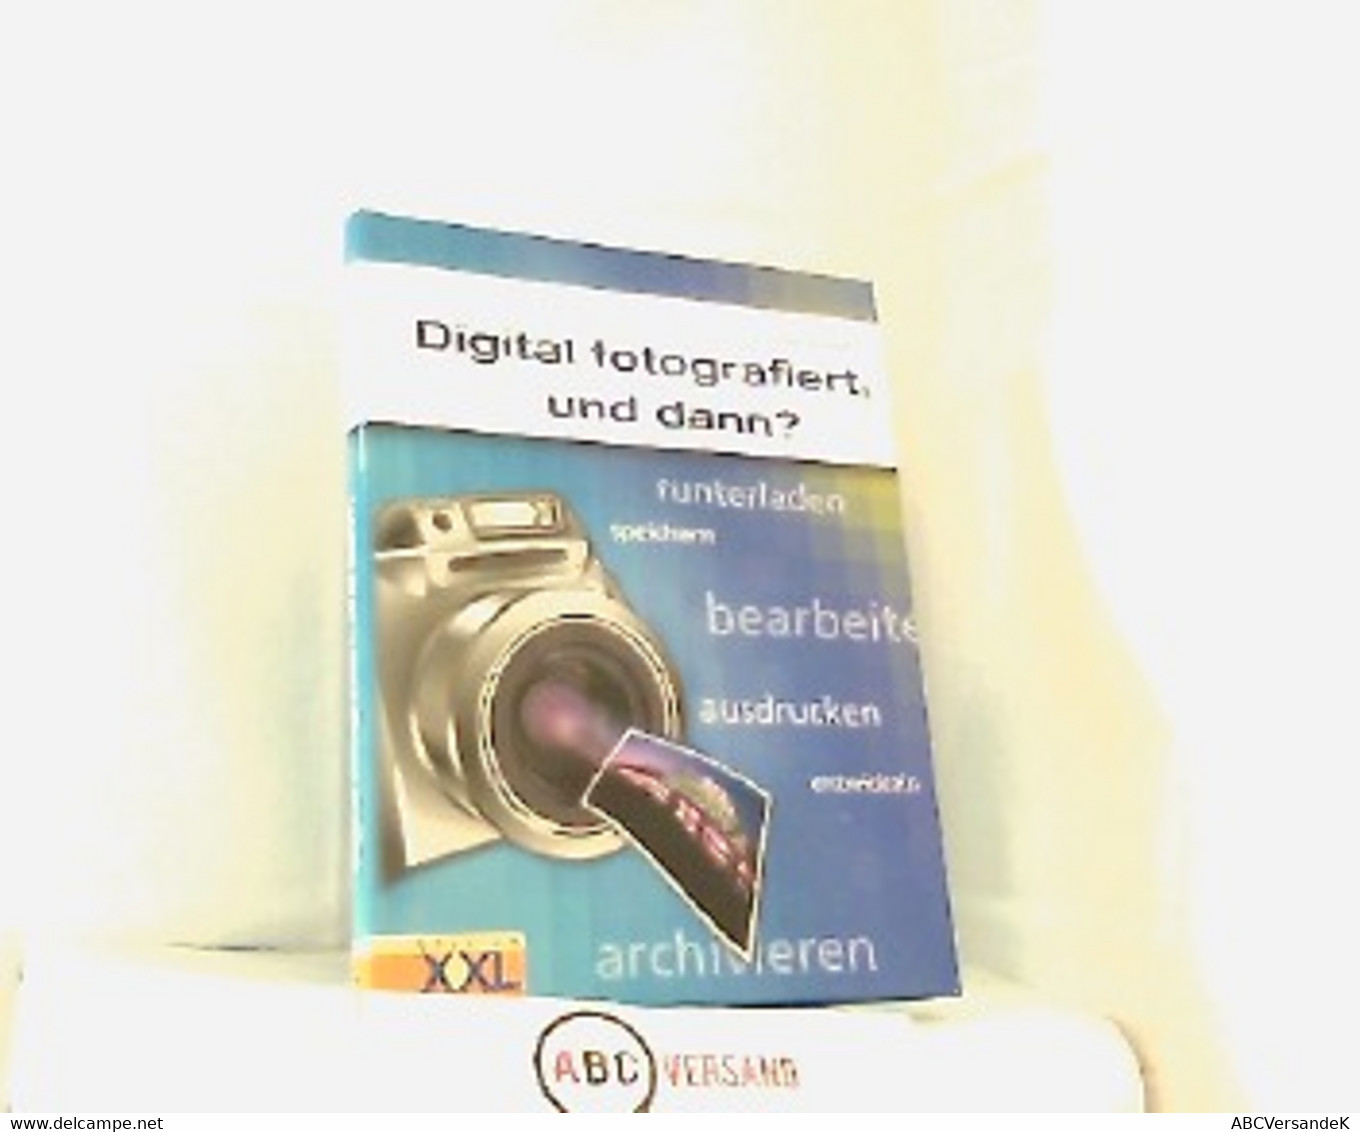 Digital Fotografiert, Und Dann? Runterladen, Speichern, Bearbeiten, Ausdrucken, Entwickeln, Archivieren. - Fotografía